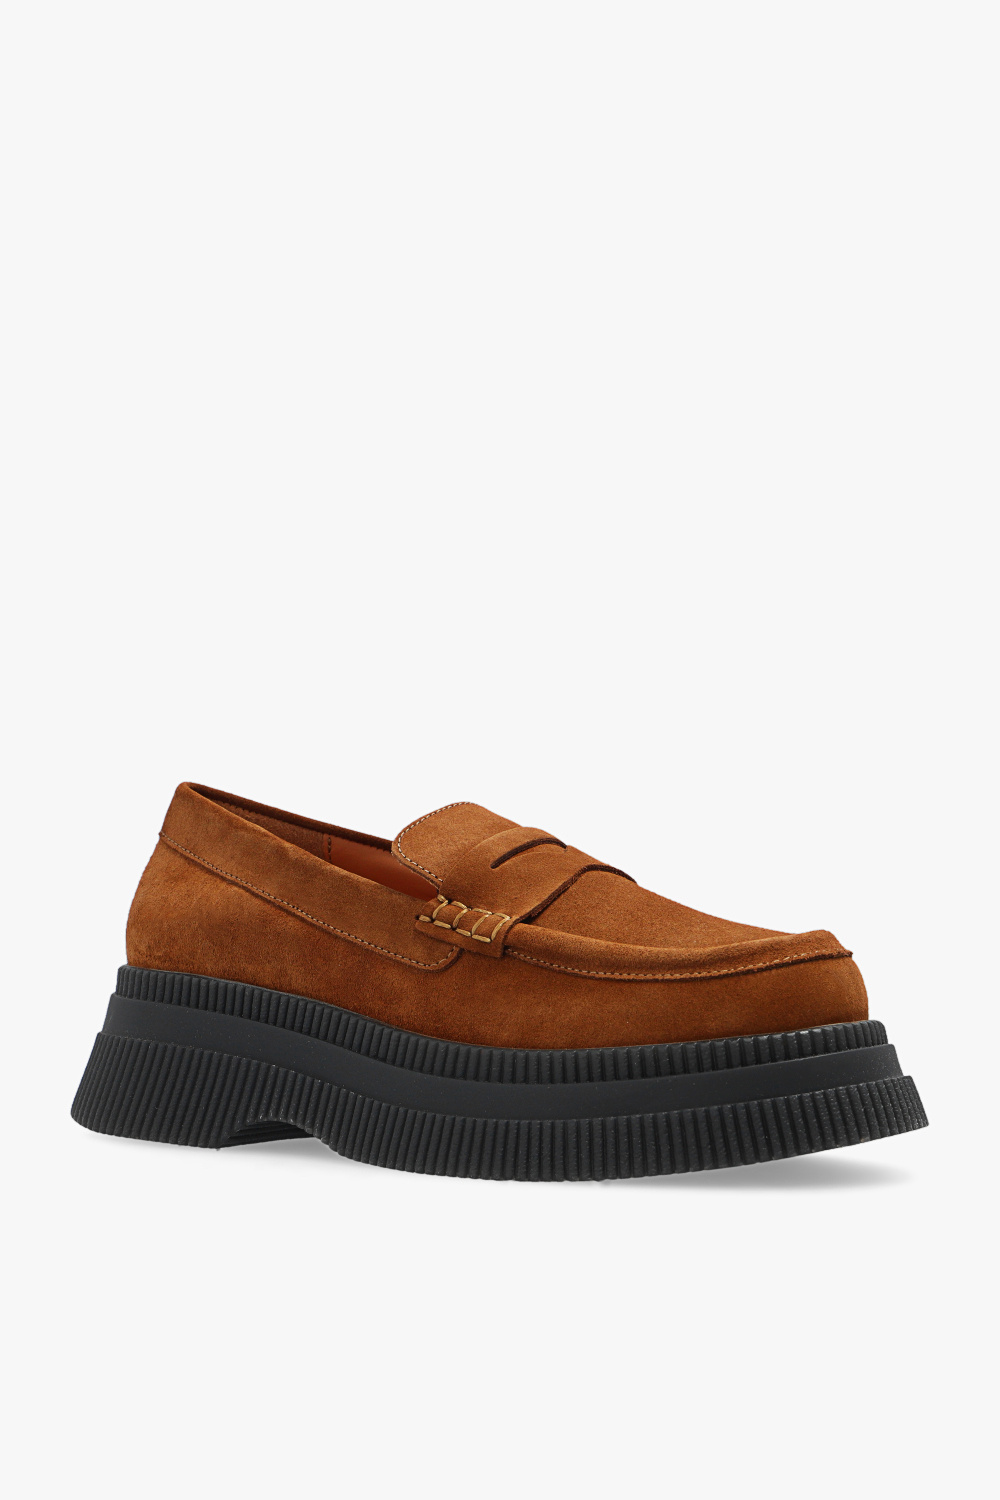 Ganni Detroit leather monk shoes